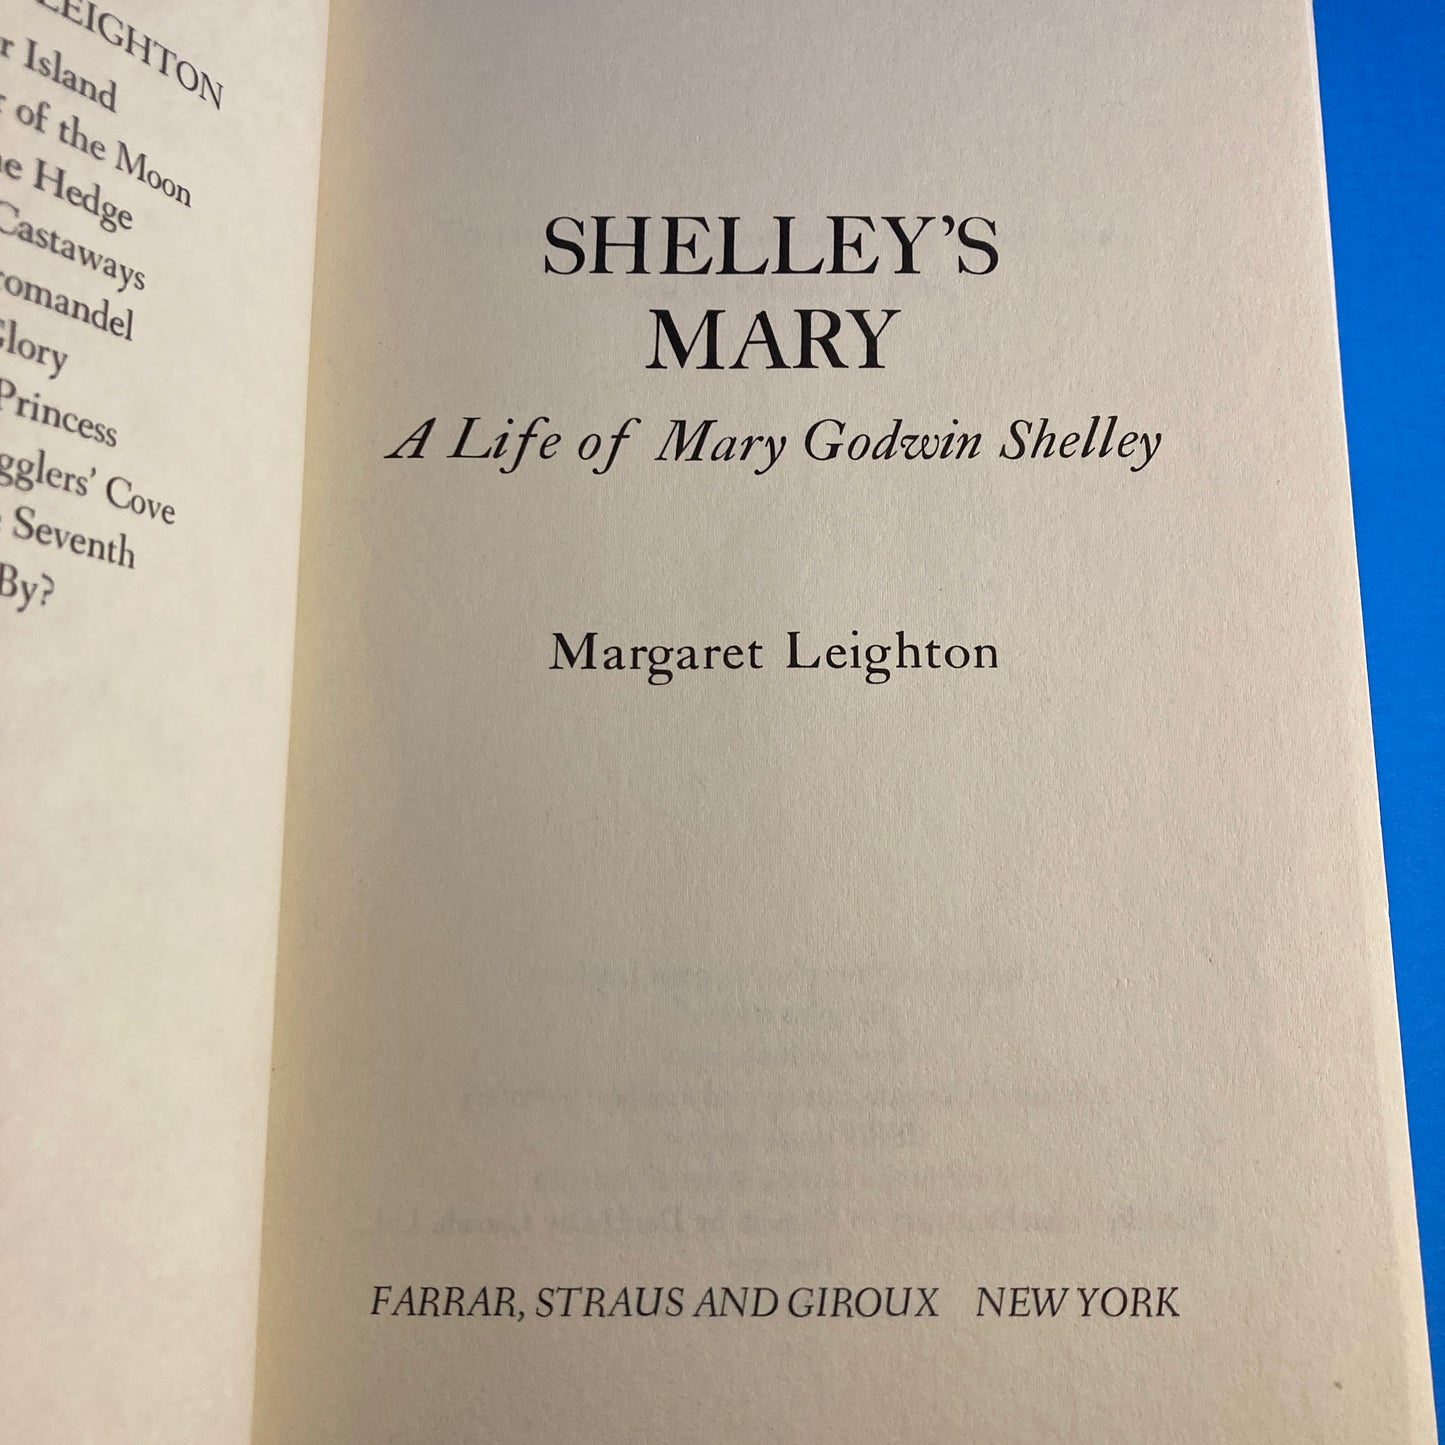 Shelley's Mary